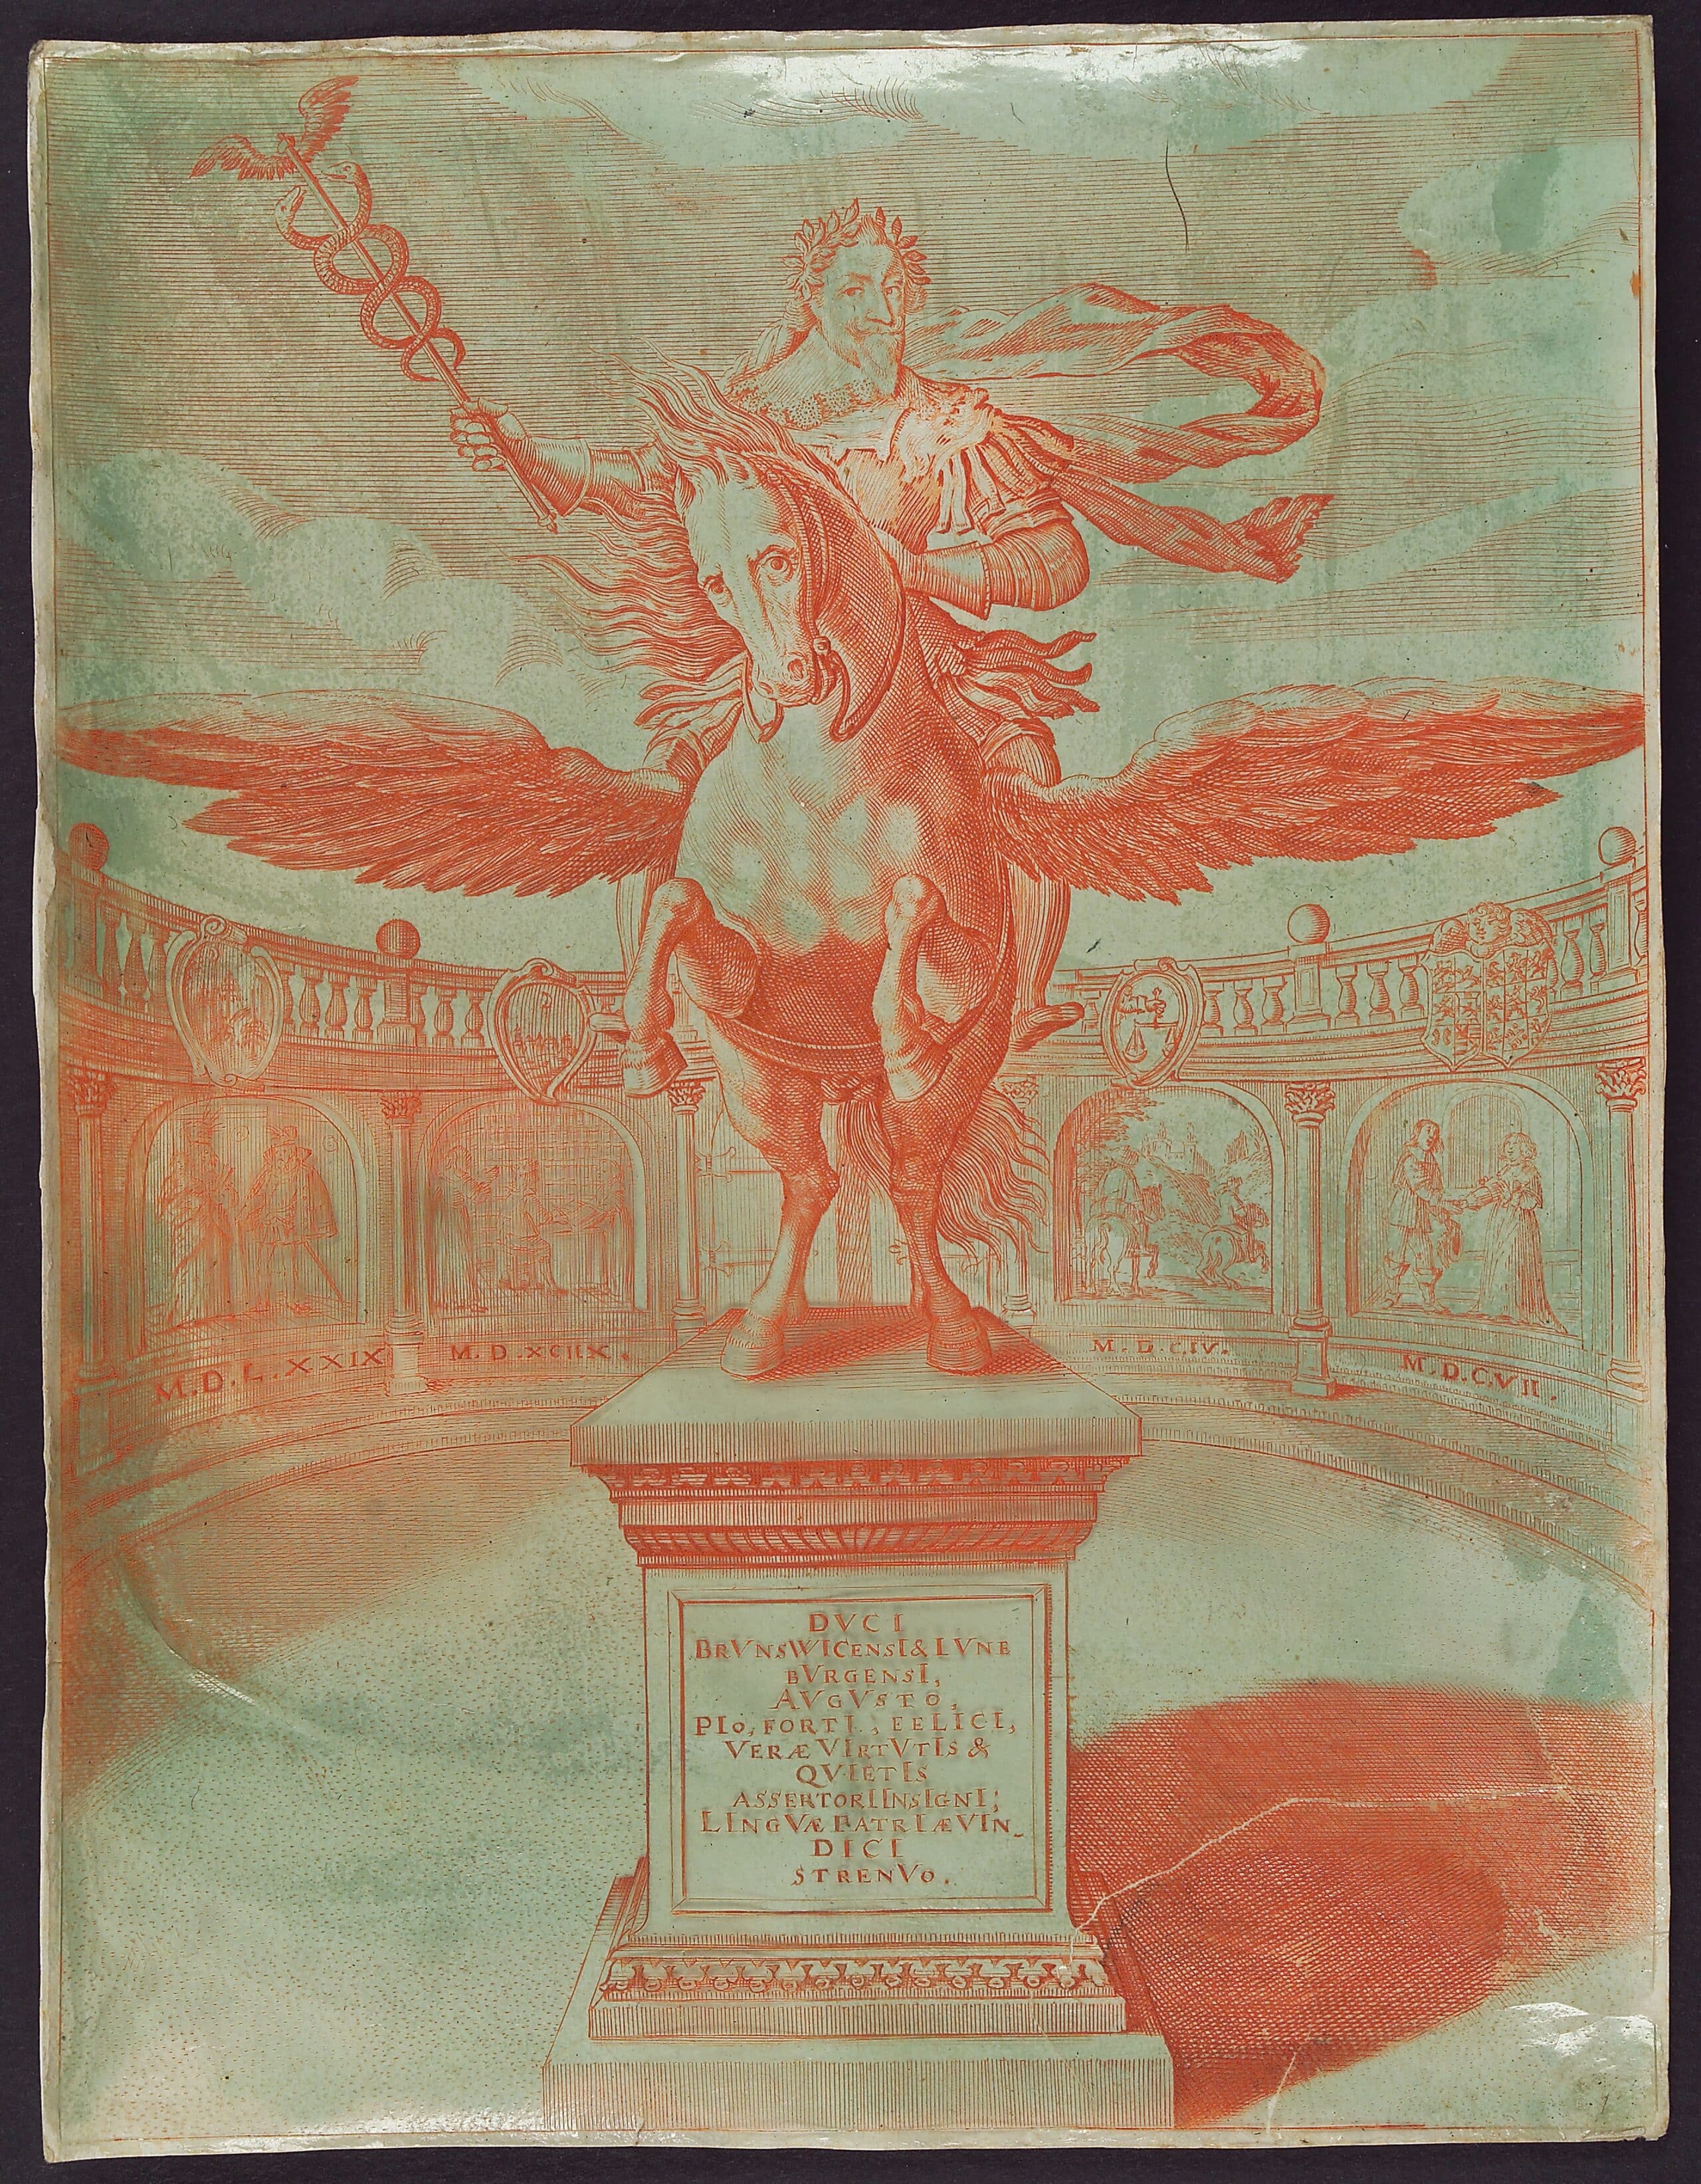 Die Statue eines Mannes mit Lorbeerkranz und Zepter auf einem geflügelten Pferd, das sich aufbäumt. Der Sockel enthält eine lateinische Inschrift.